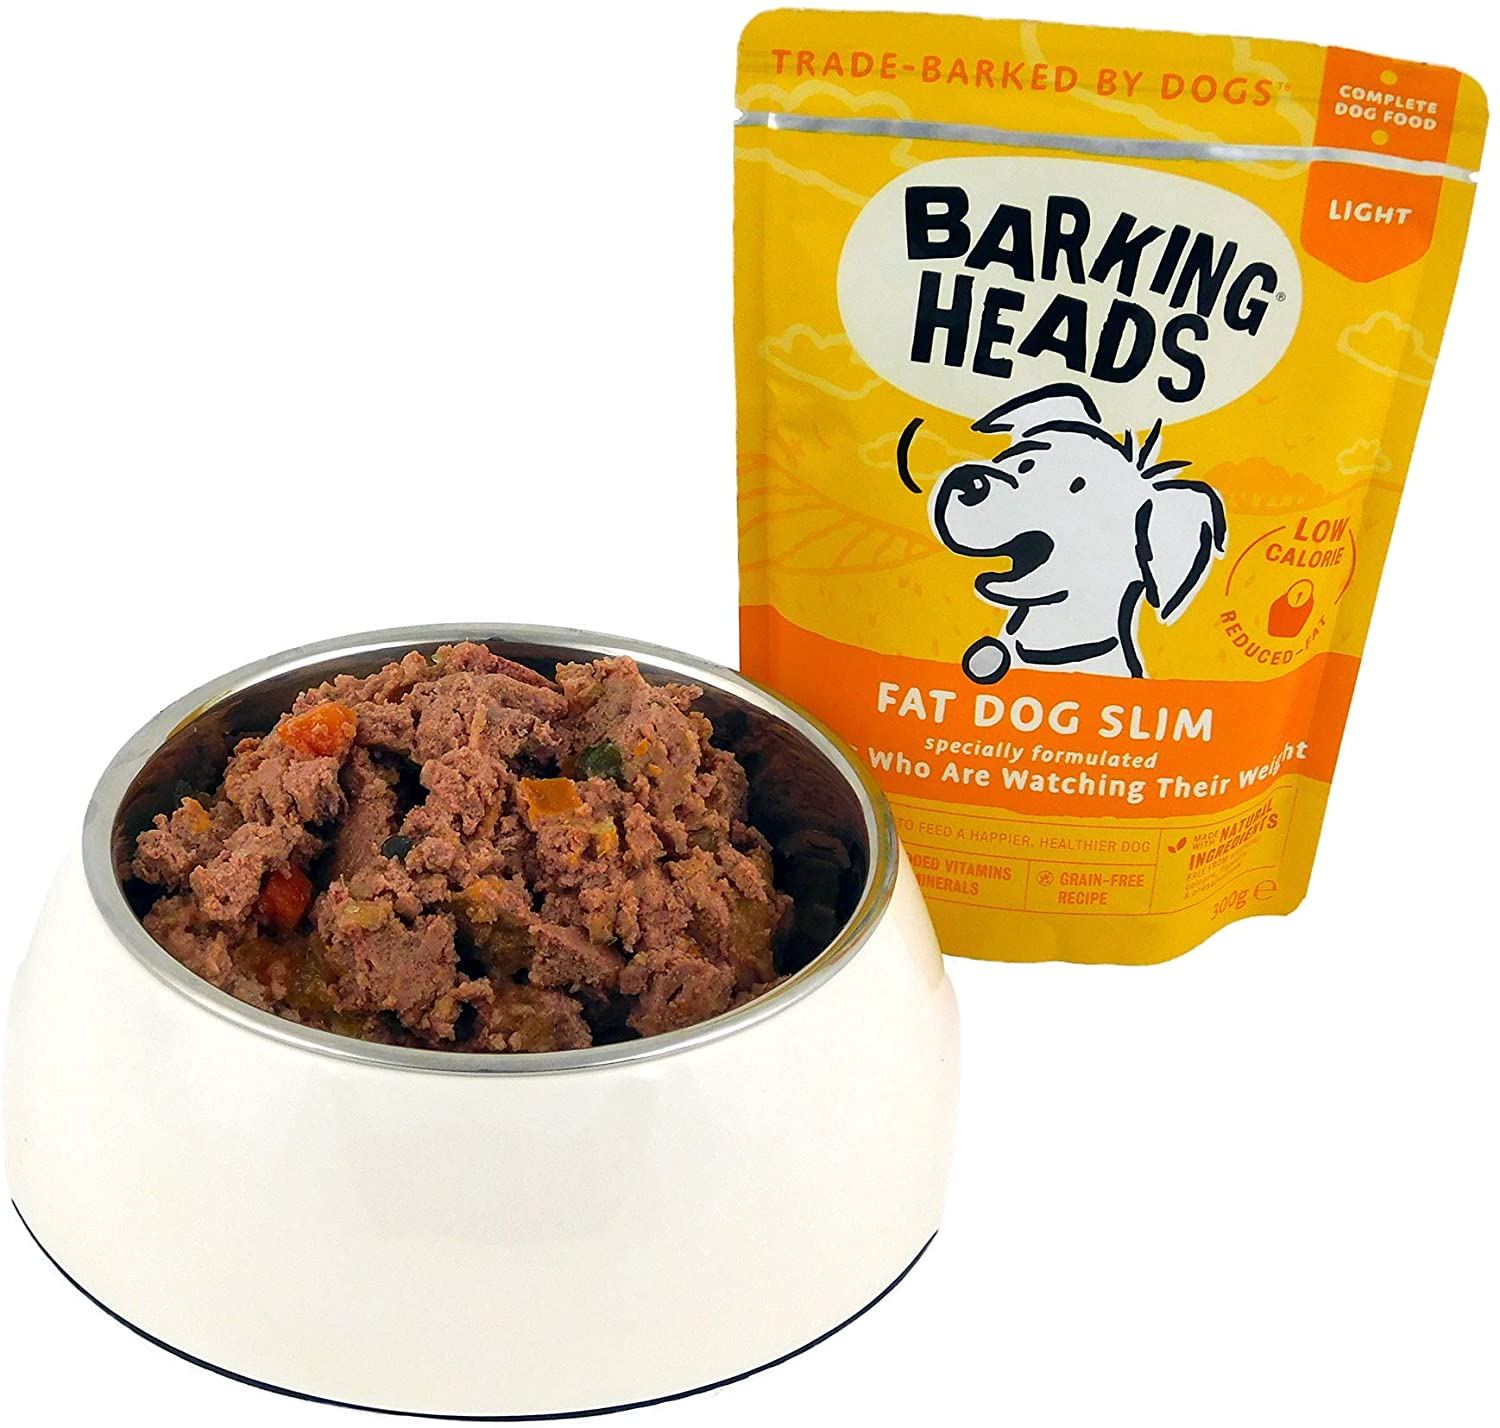  Barking Heads Comida Húmeda para Perros baja en calorías - Fat Dog Slim - Pollo de corral sin aromas artificiales, 85% Natural, Receta baja en calorías sin cereales (10 x 300 g) 